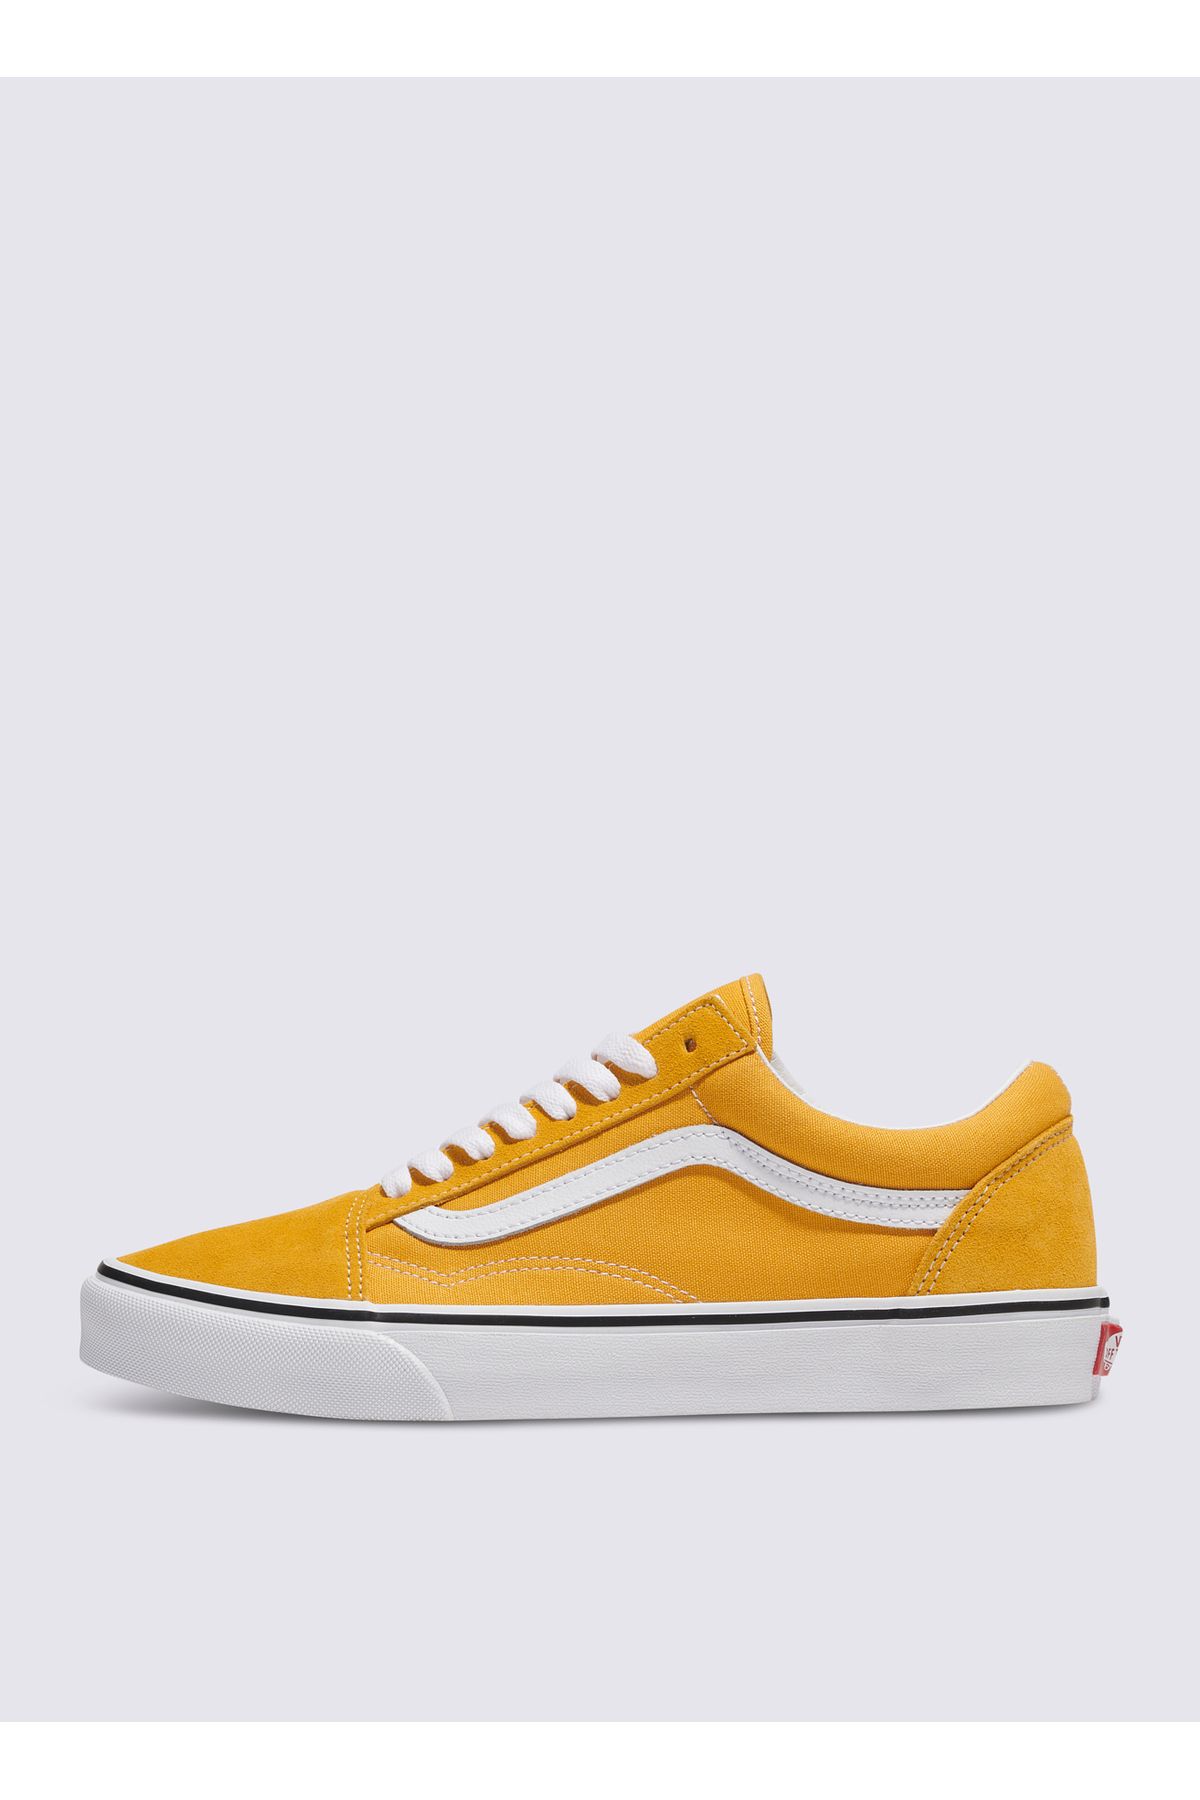 Vans Lifestyle Ayakkabı, 43, Sarı